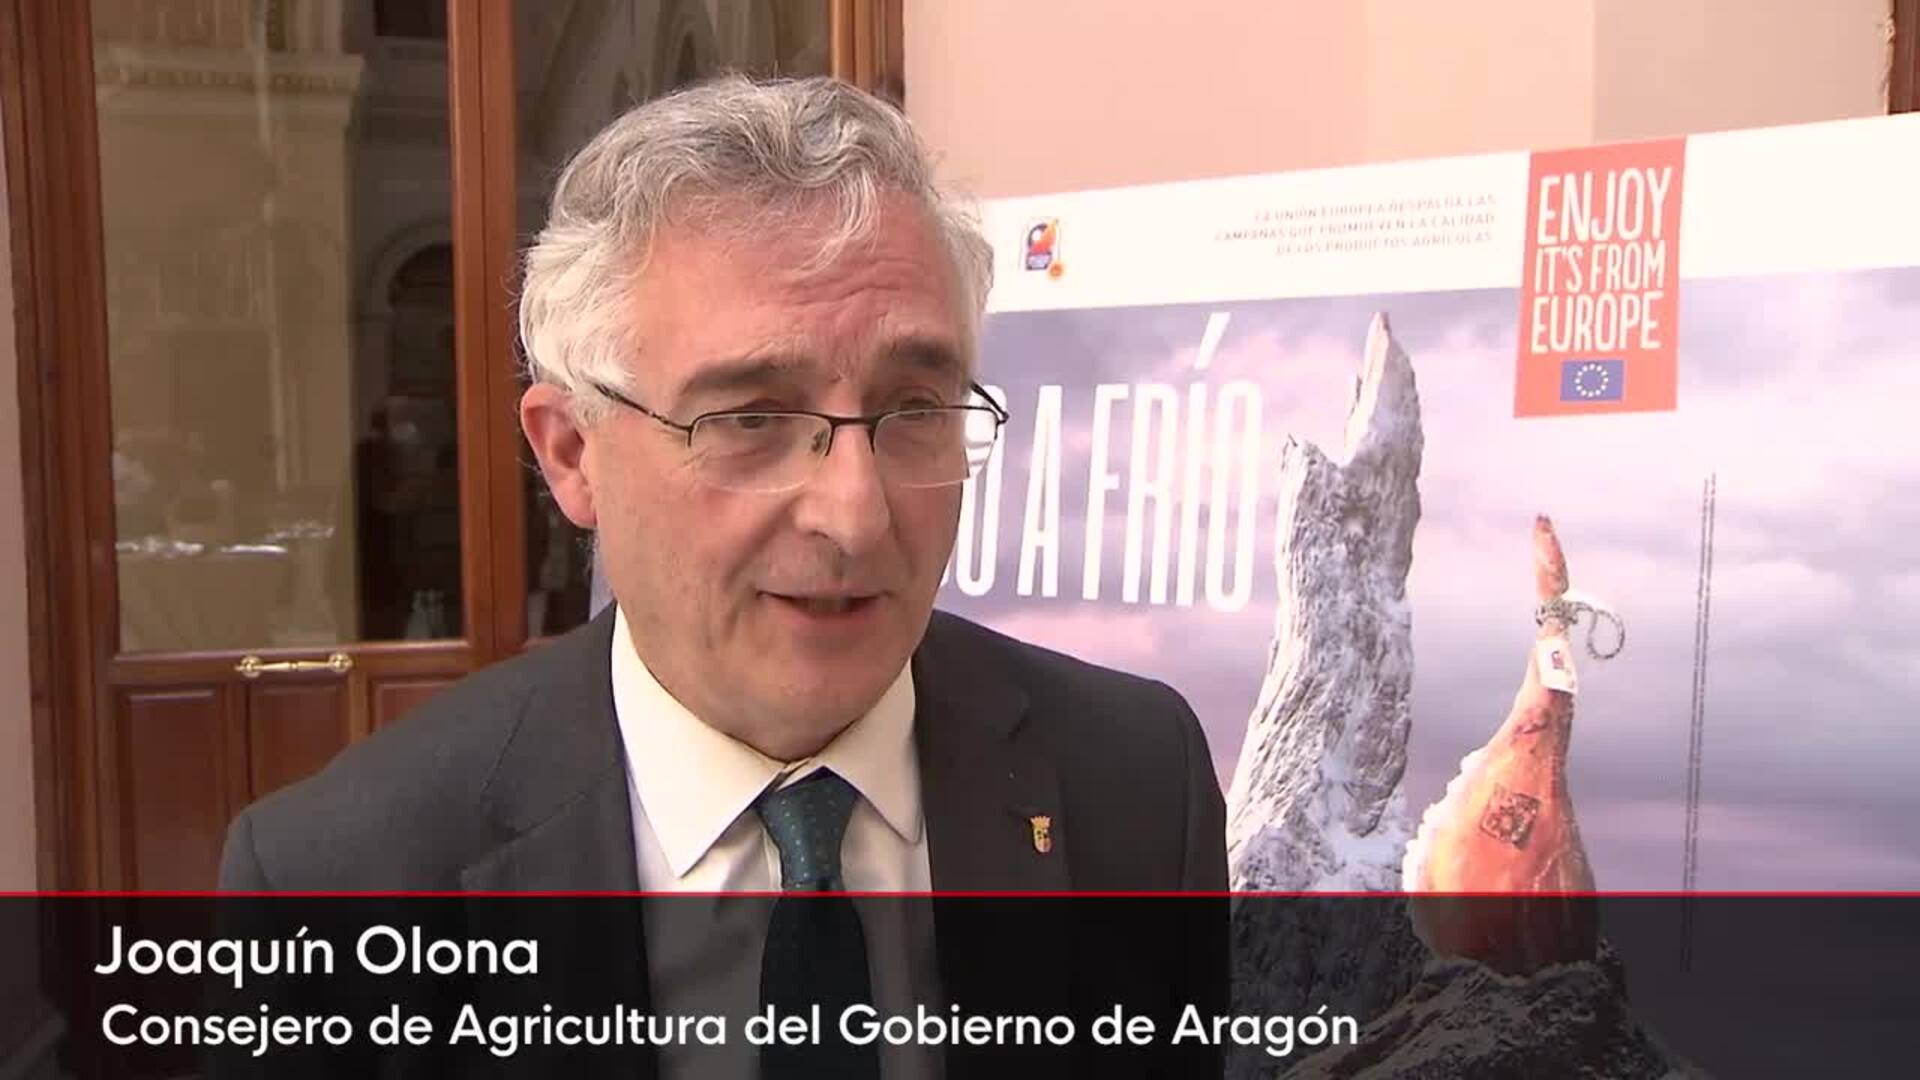 La DOP Jamón de Teruel presenta su nueva campaña de promoción europea